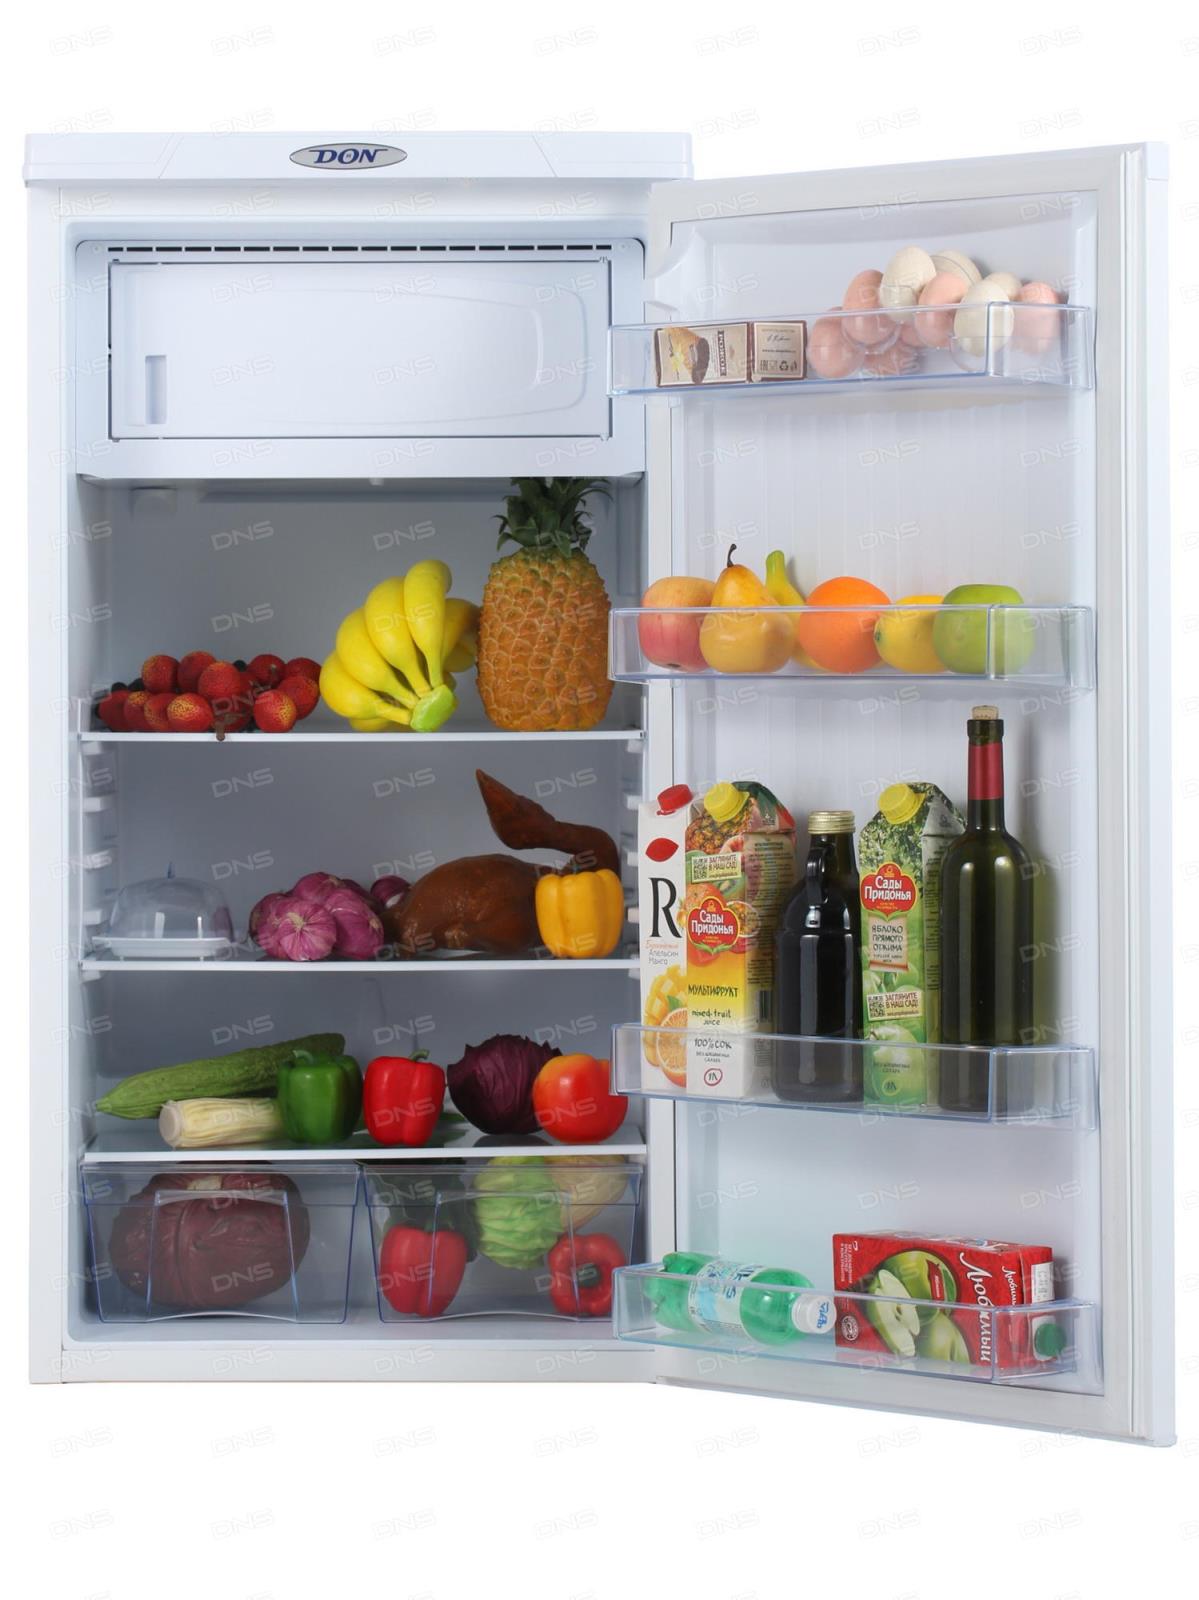 Холодильник иваново каталог товаров и цены